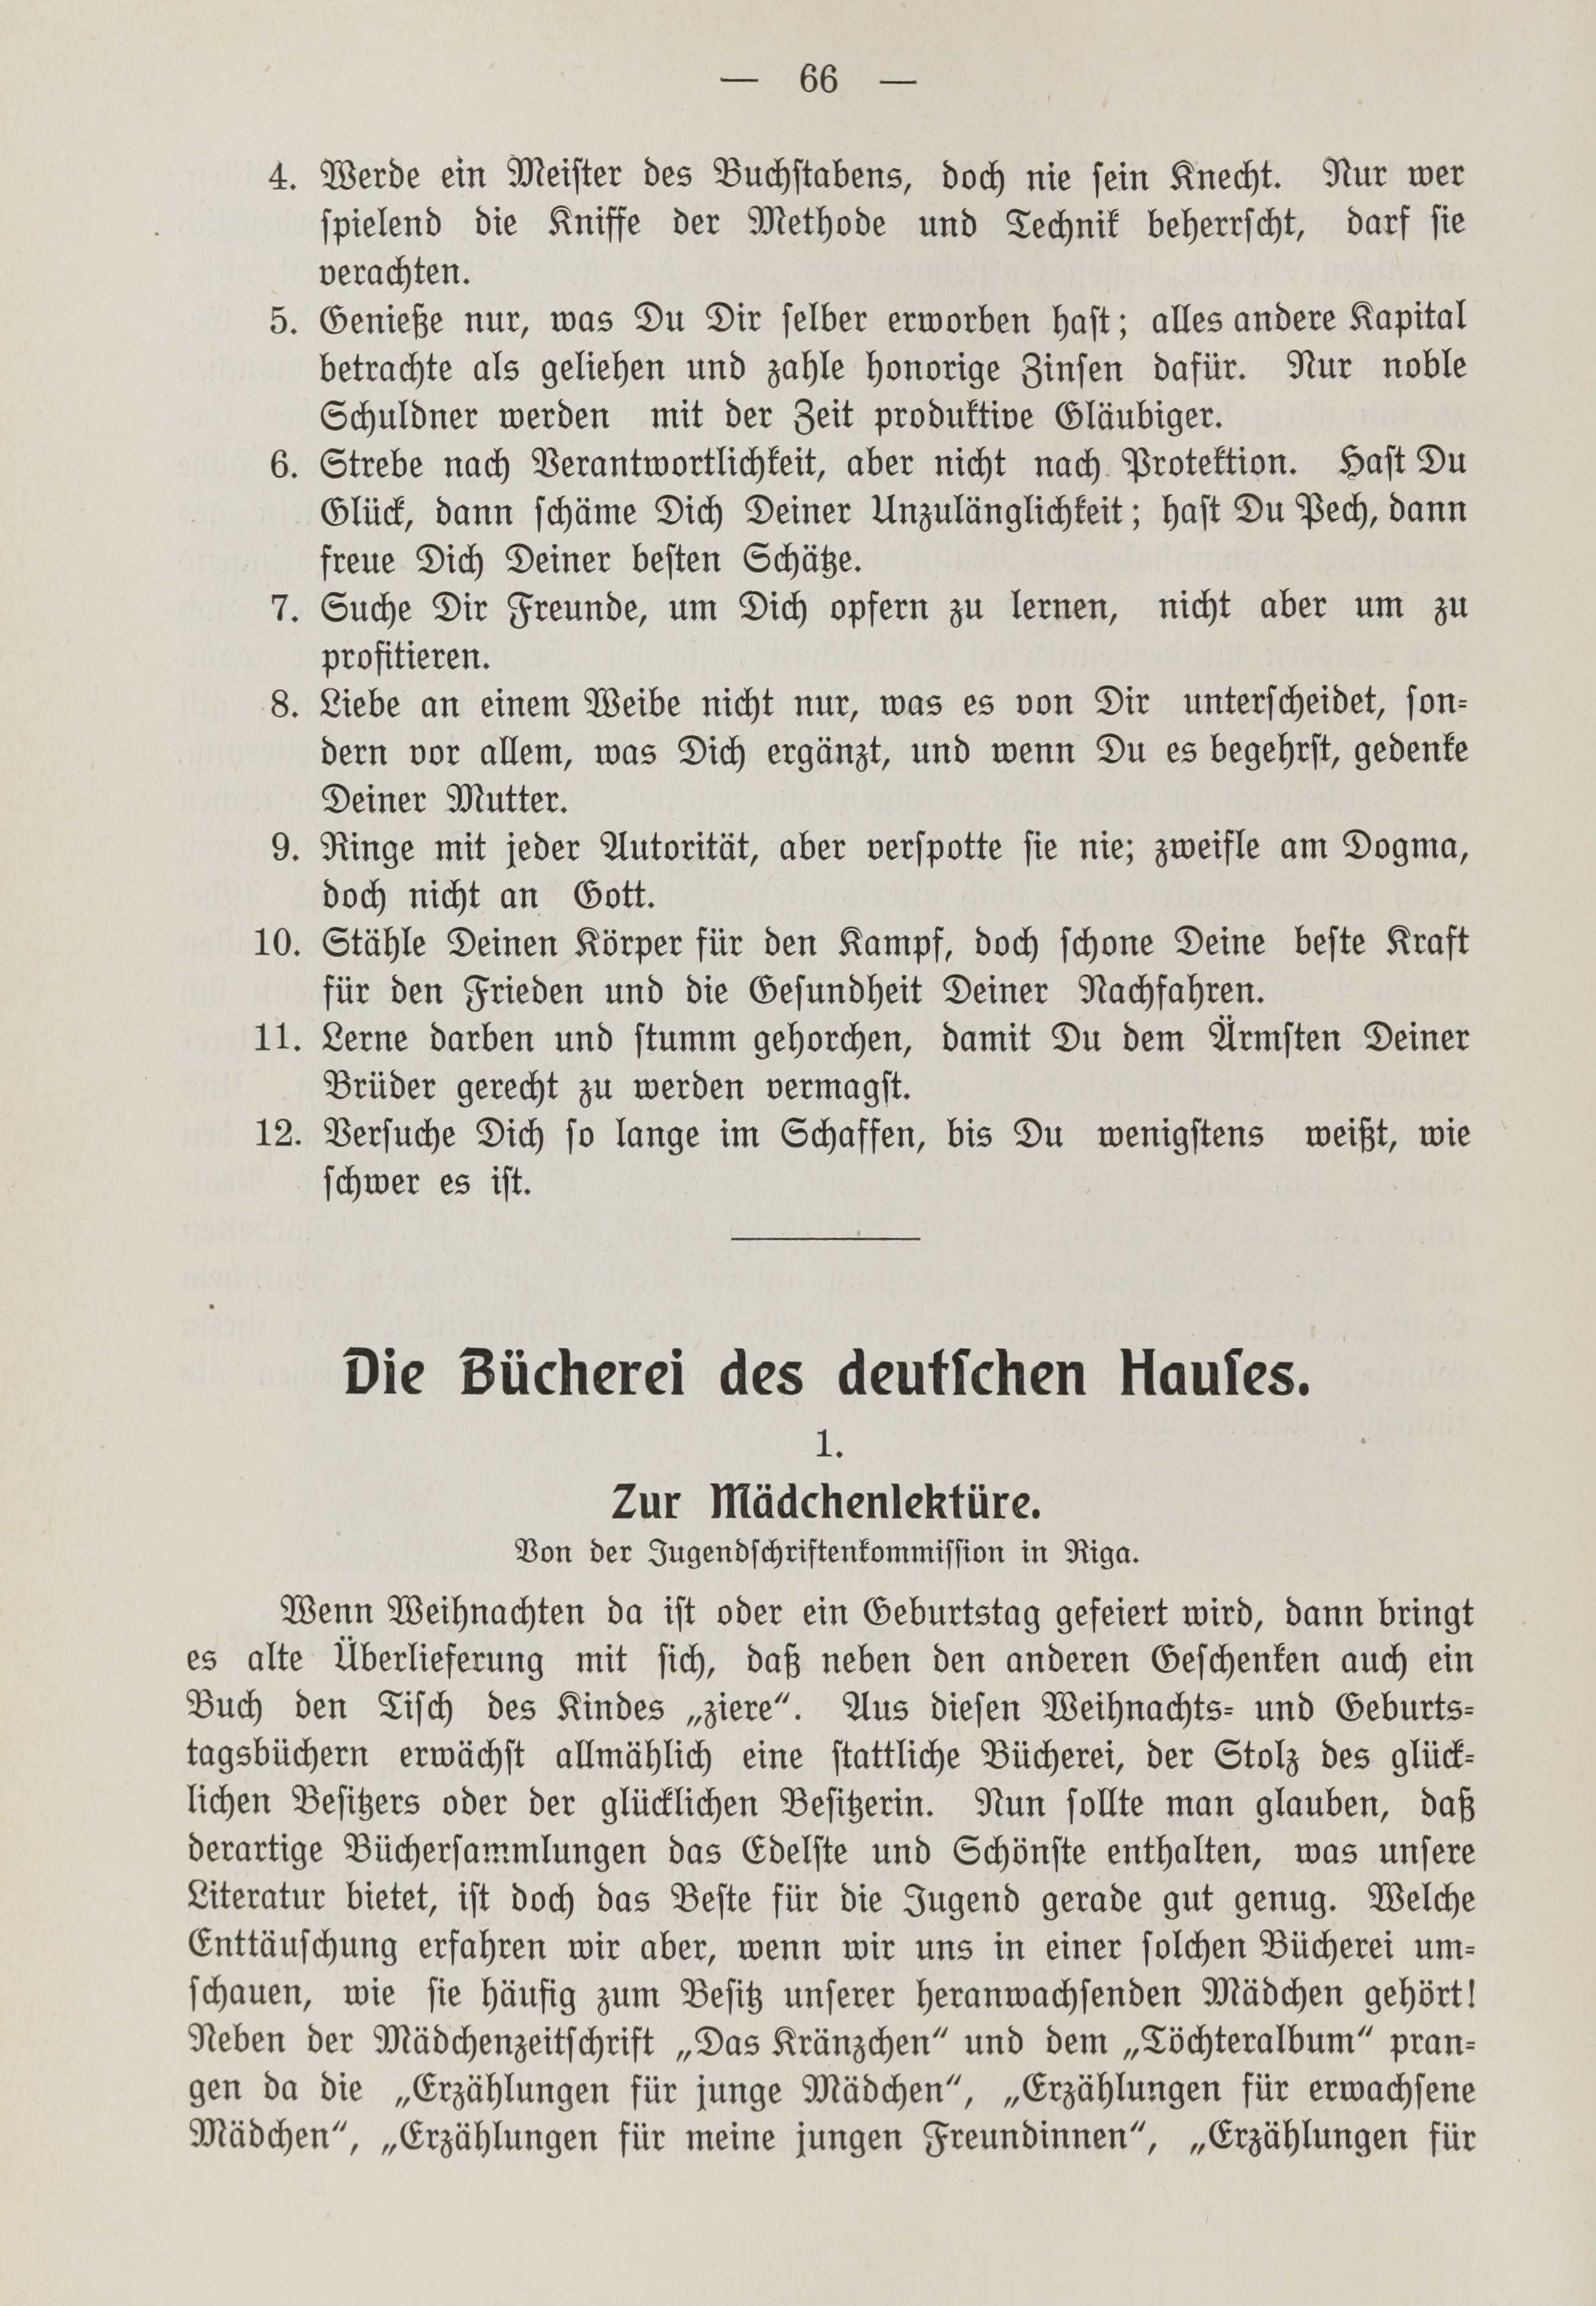 Deutsche Monatsschrift für Russland [1] (1912) | 73. (66) Põhitekst